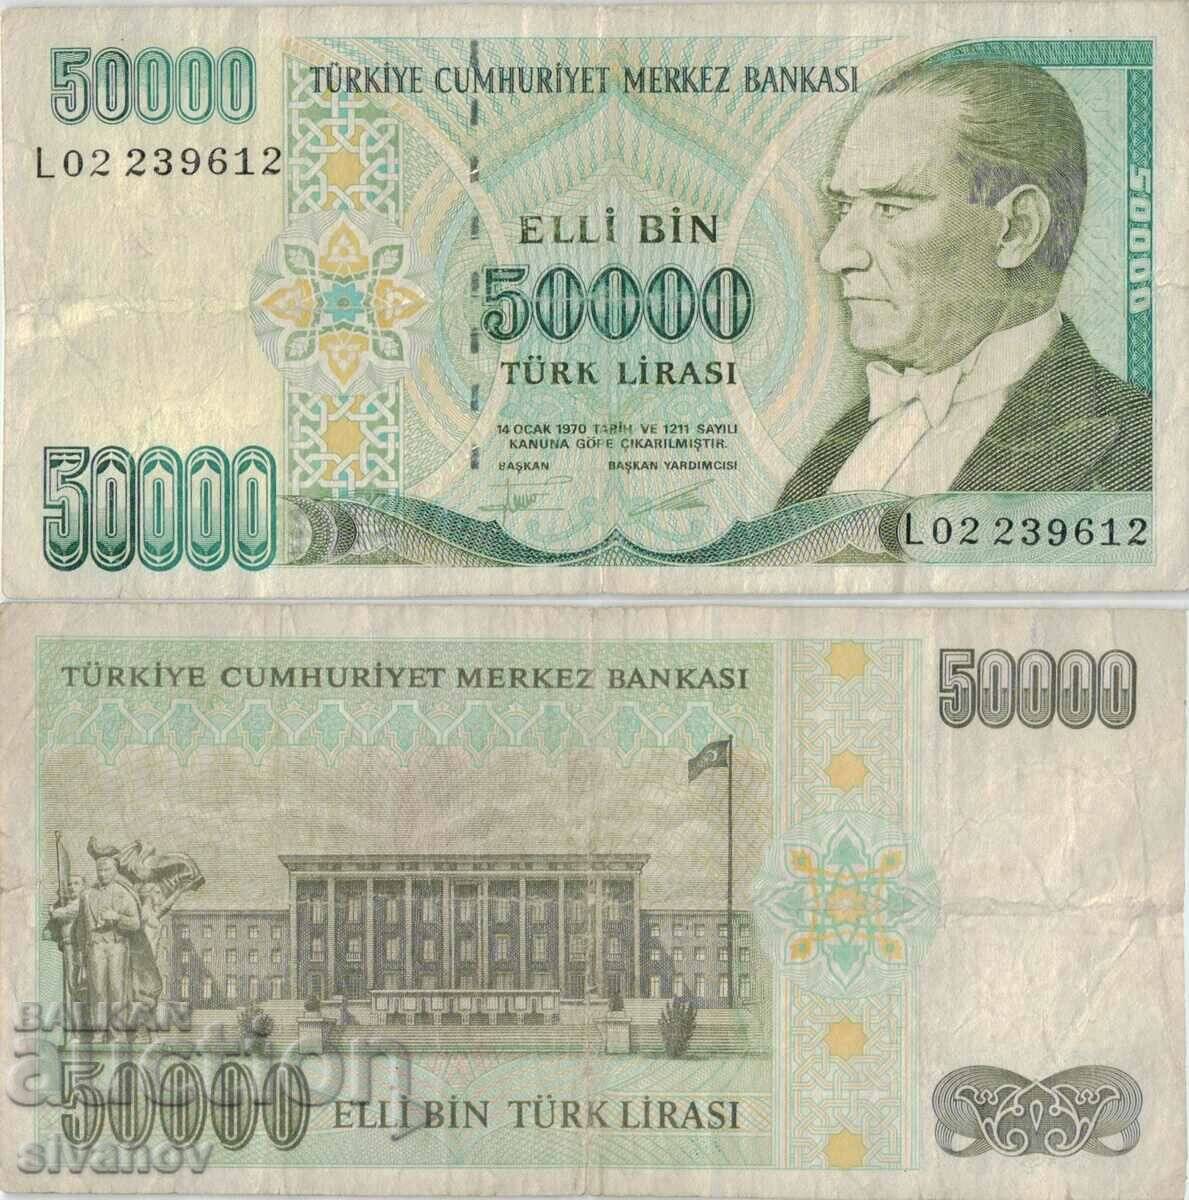 Turkey 50,000 lira 1970 (1995) year banknote #5188